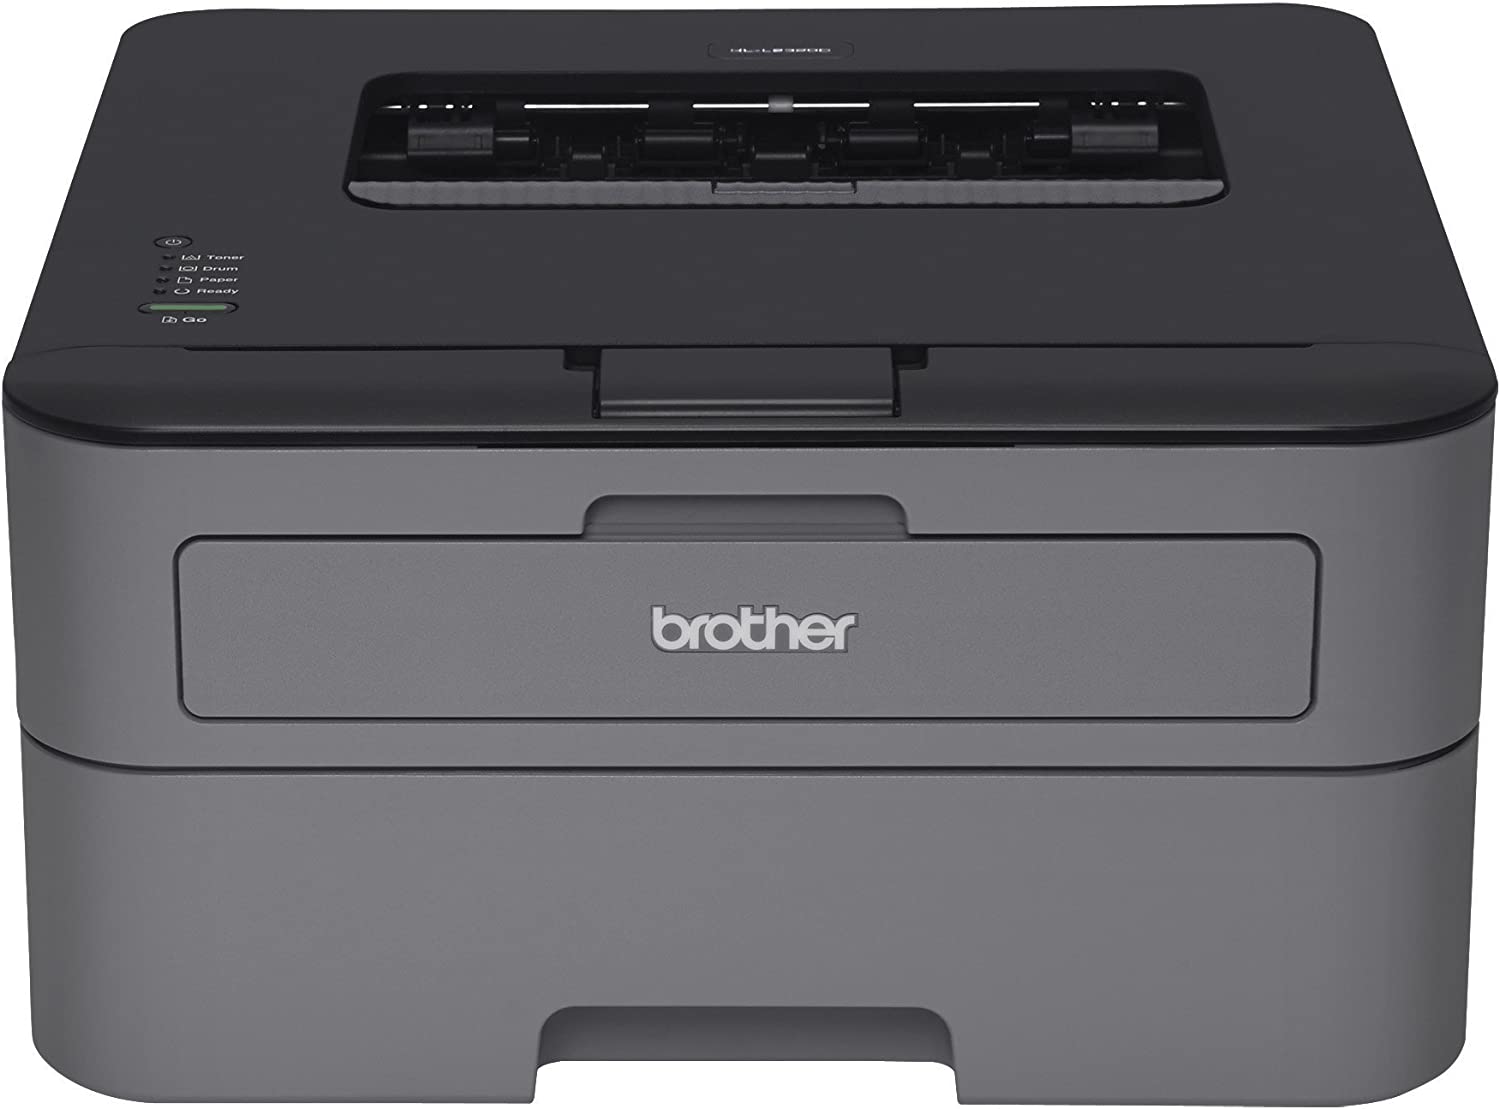 black and white laser printer comparison tables